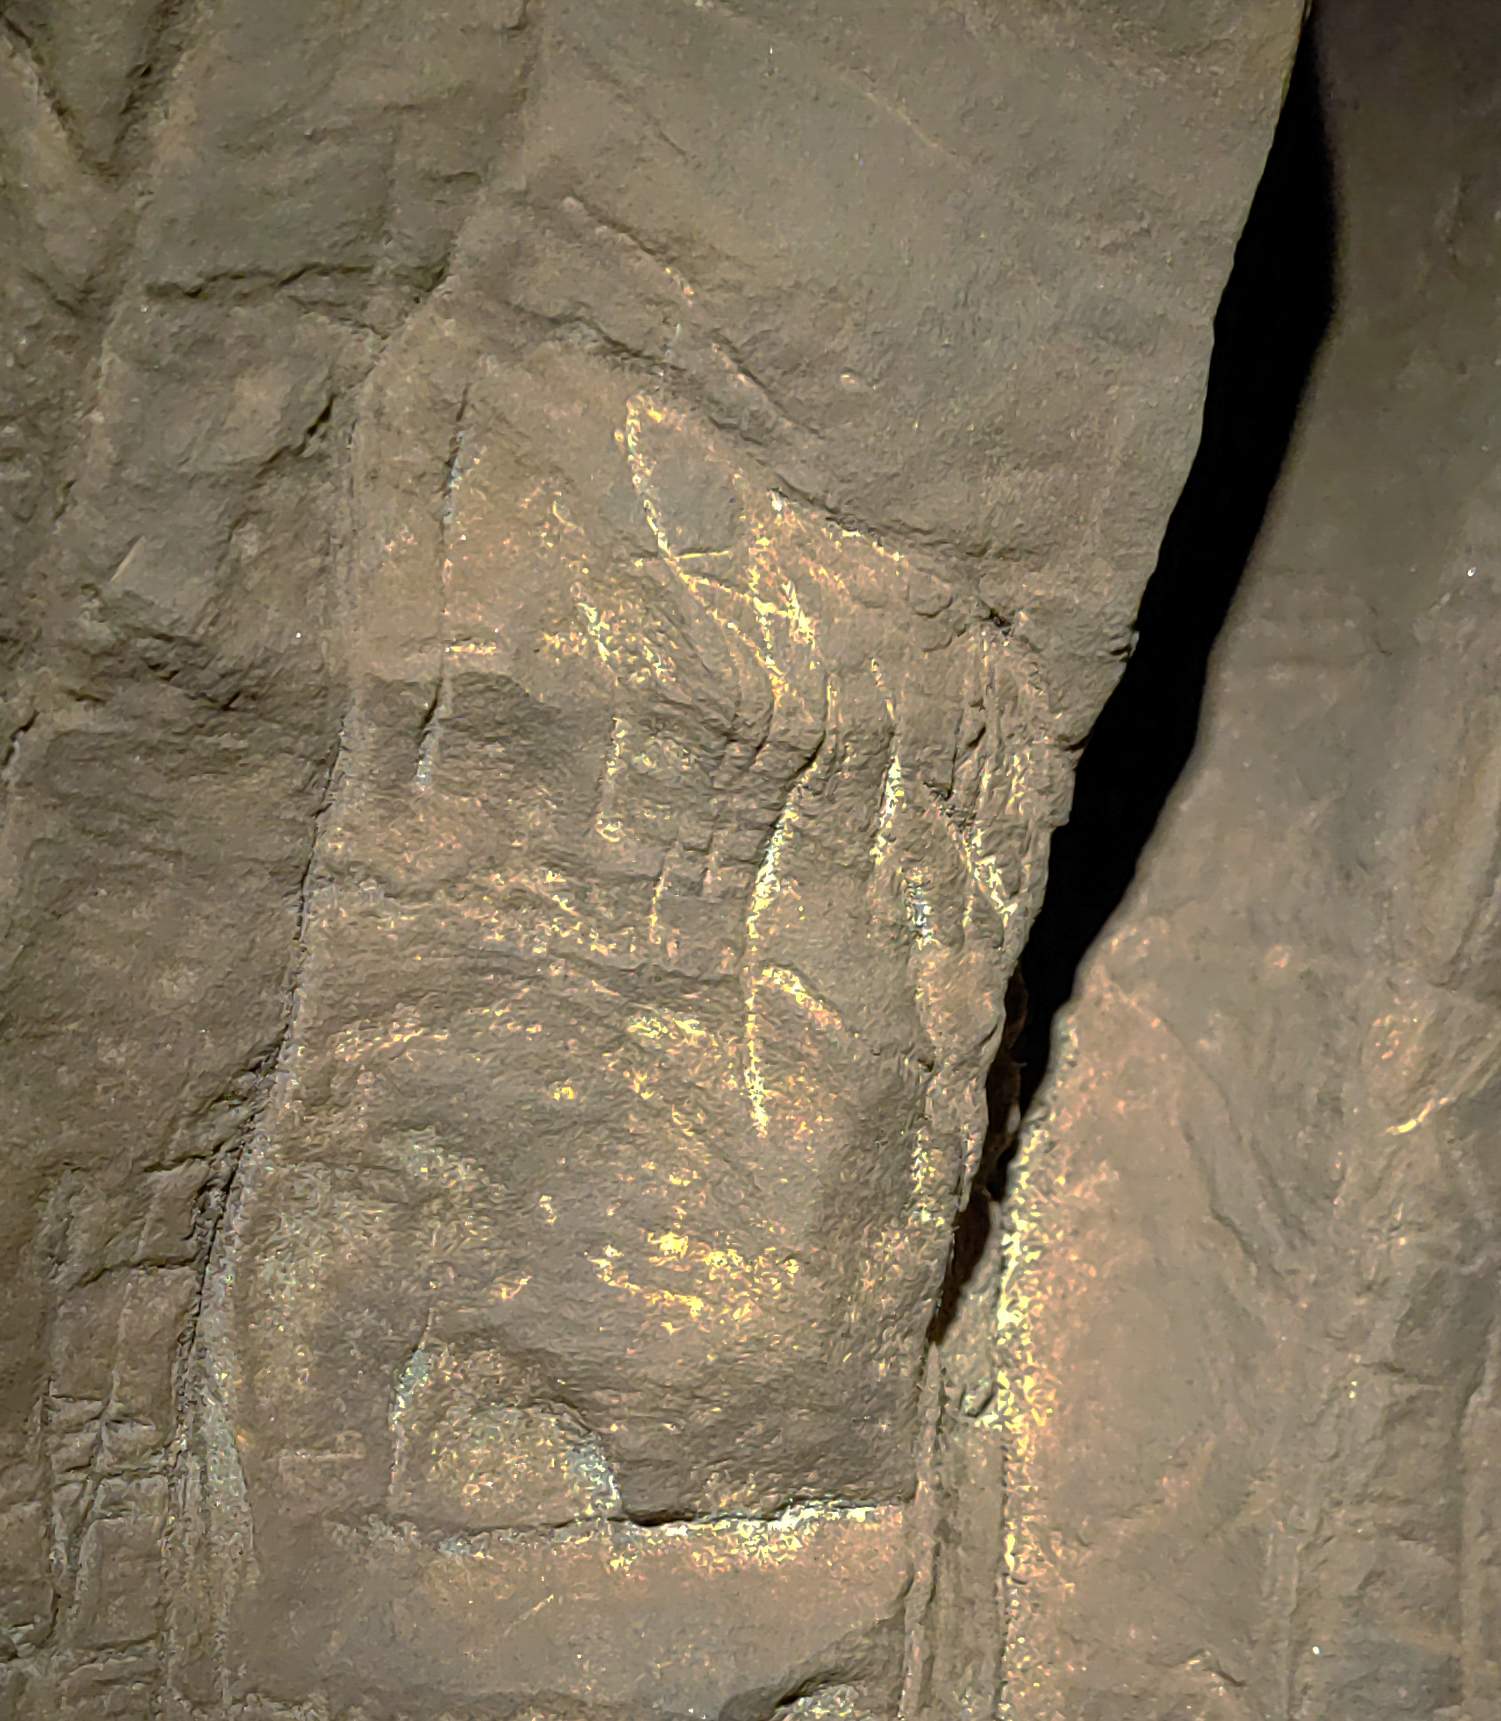 In der Grabkammer des Hill Antechamber wurden Gravuren gefunden, beispielsweise die Form eines umgedrehten Kreuzes. Es gibt auch ein auf die Oberfläche aufgetragenes Material, um die nicht-geometrischen Bilder bei schlechten Lichtverhältnissen hervorzuheben, obwohl dies noch nicht analysiert wurde.